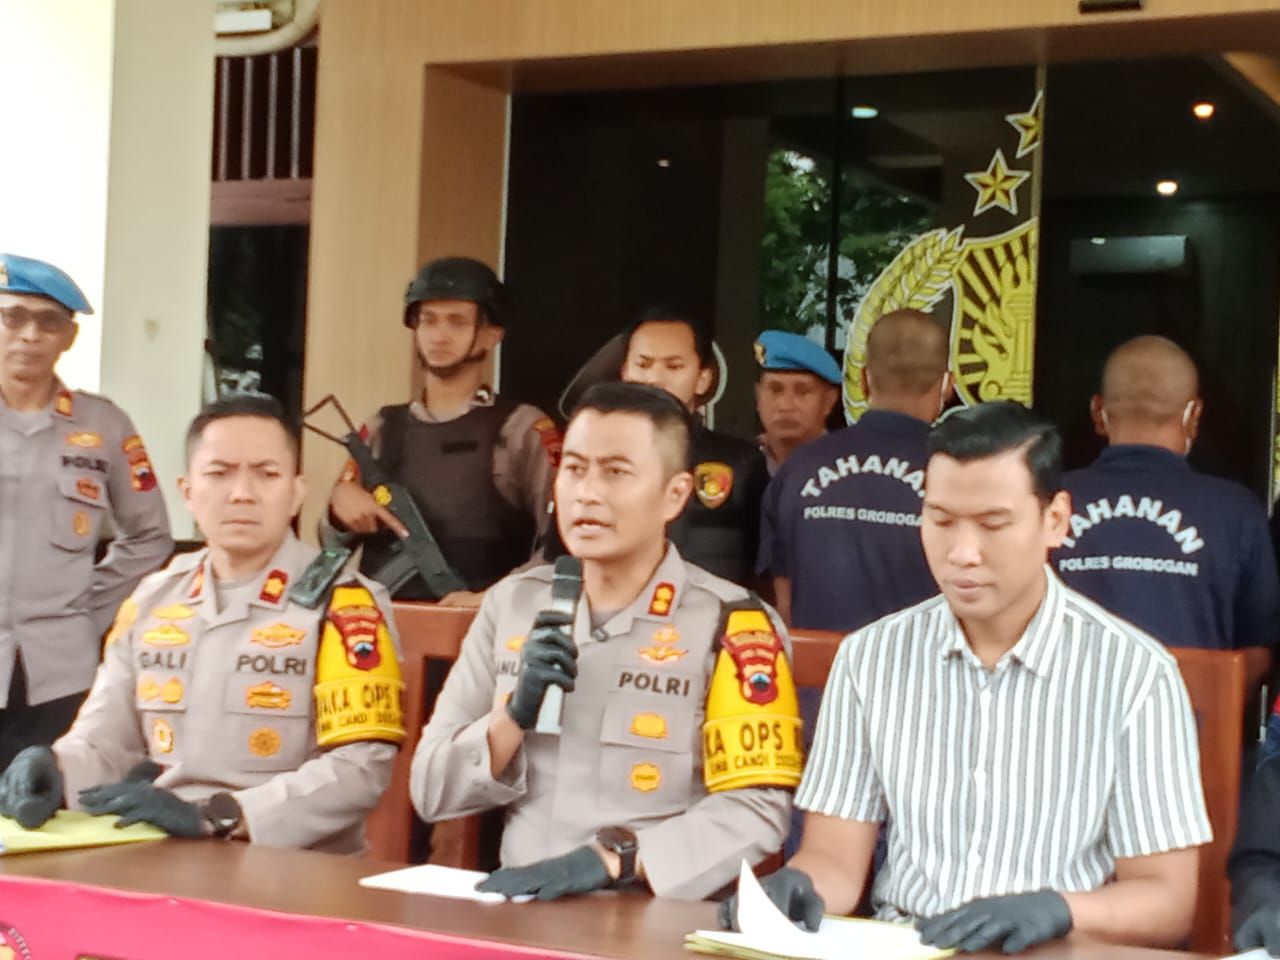 Kapolres Grobogan AKBP Dedy Anung Kurniawan mengatakan seluruh barang bukti yang diamankan ini harus segera dimusnahkan.